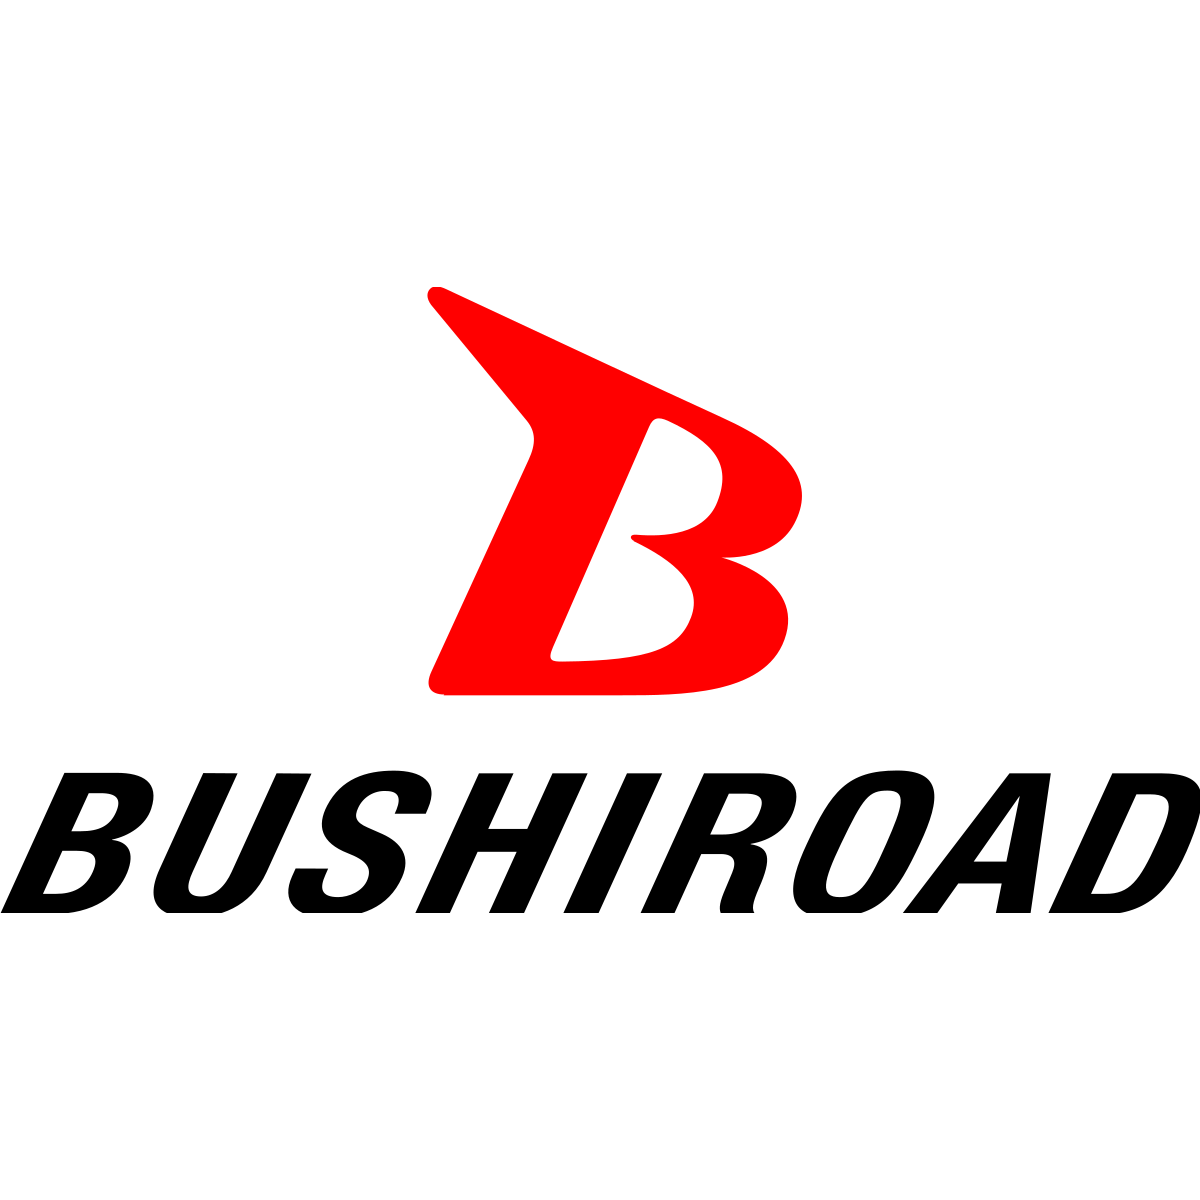 Bushiroad Sleeve Collection - Oshi No Ko - (Vol.3785)-Bushiroad-Ace Cards &amp; Collectibles